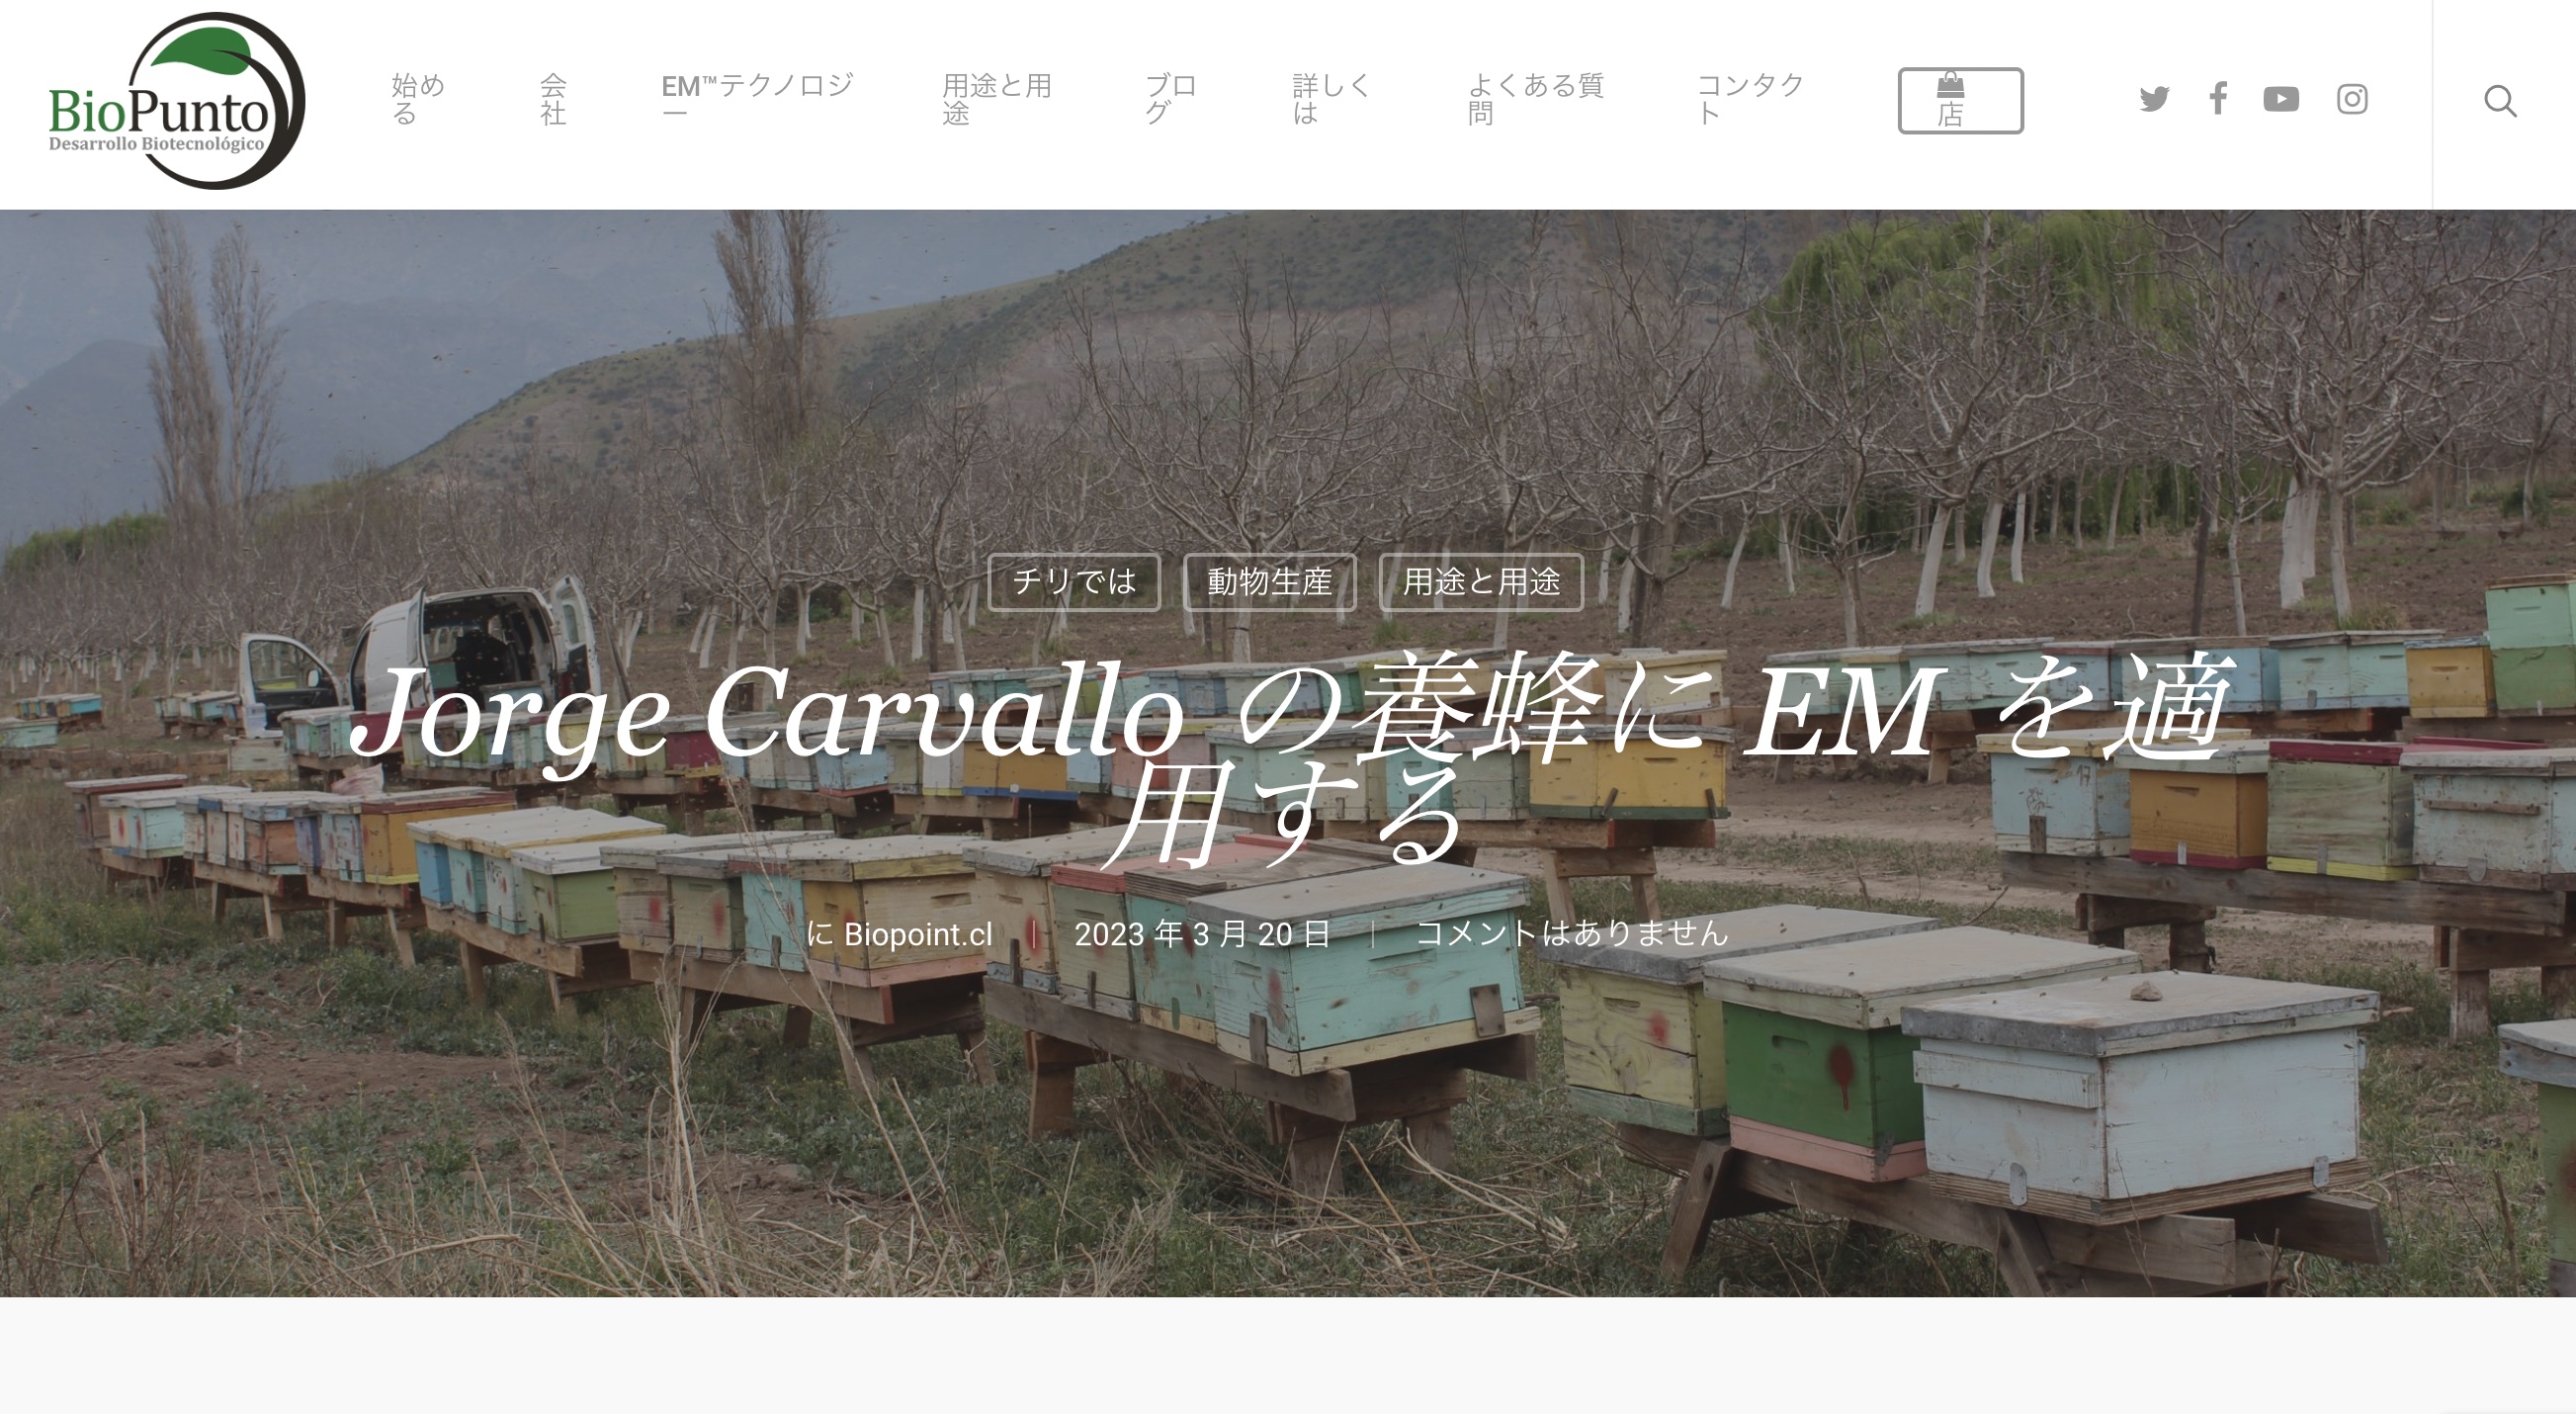 【海外パートナー情報】：【チリ】『Jorge Carvallo の養蜂に EM を適用する』 | biopunto.cl